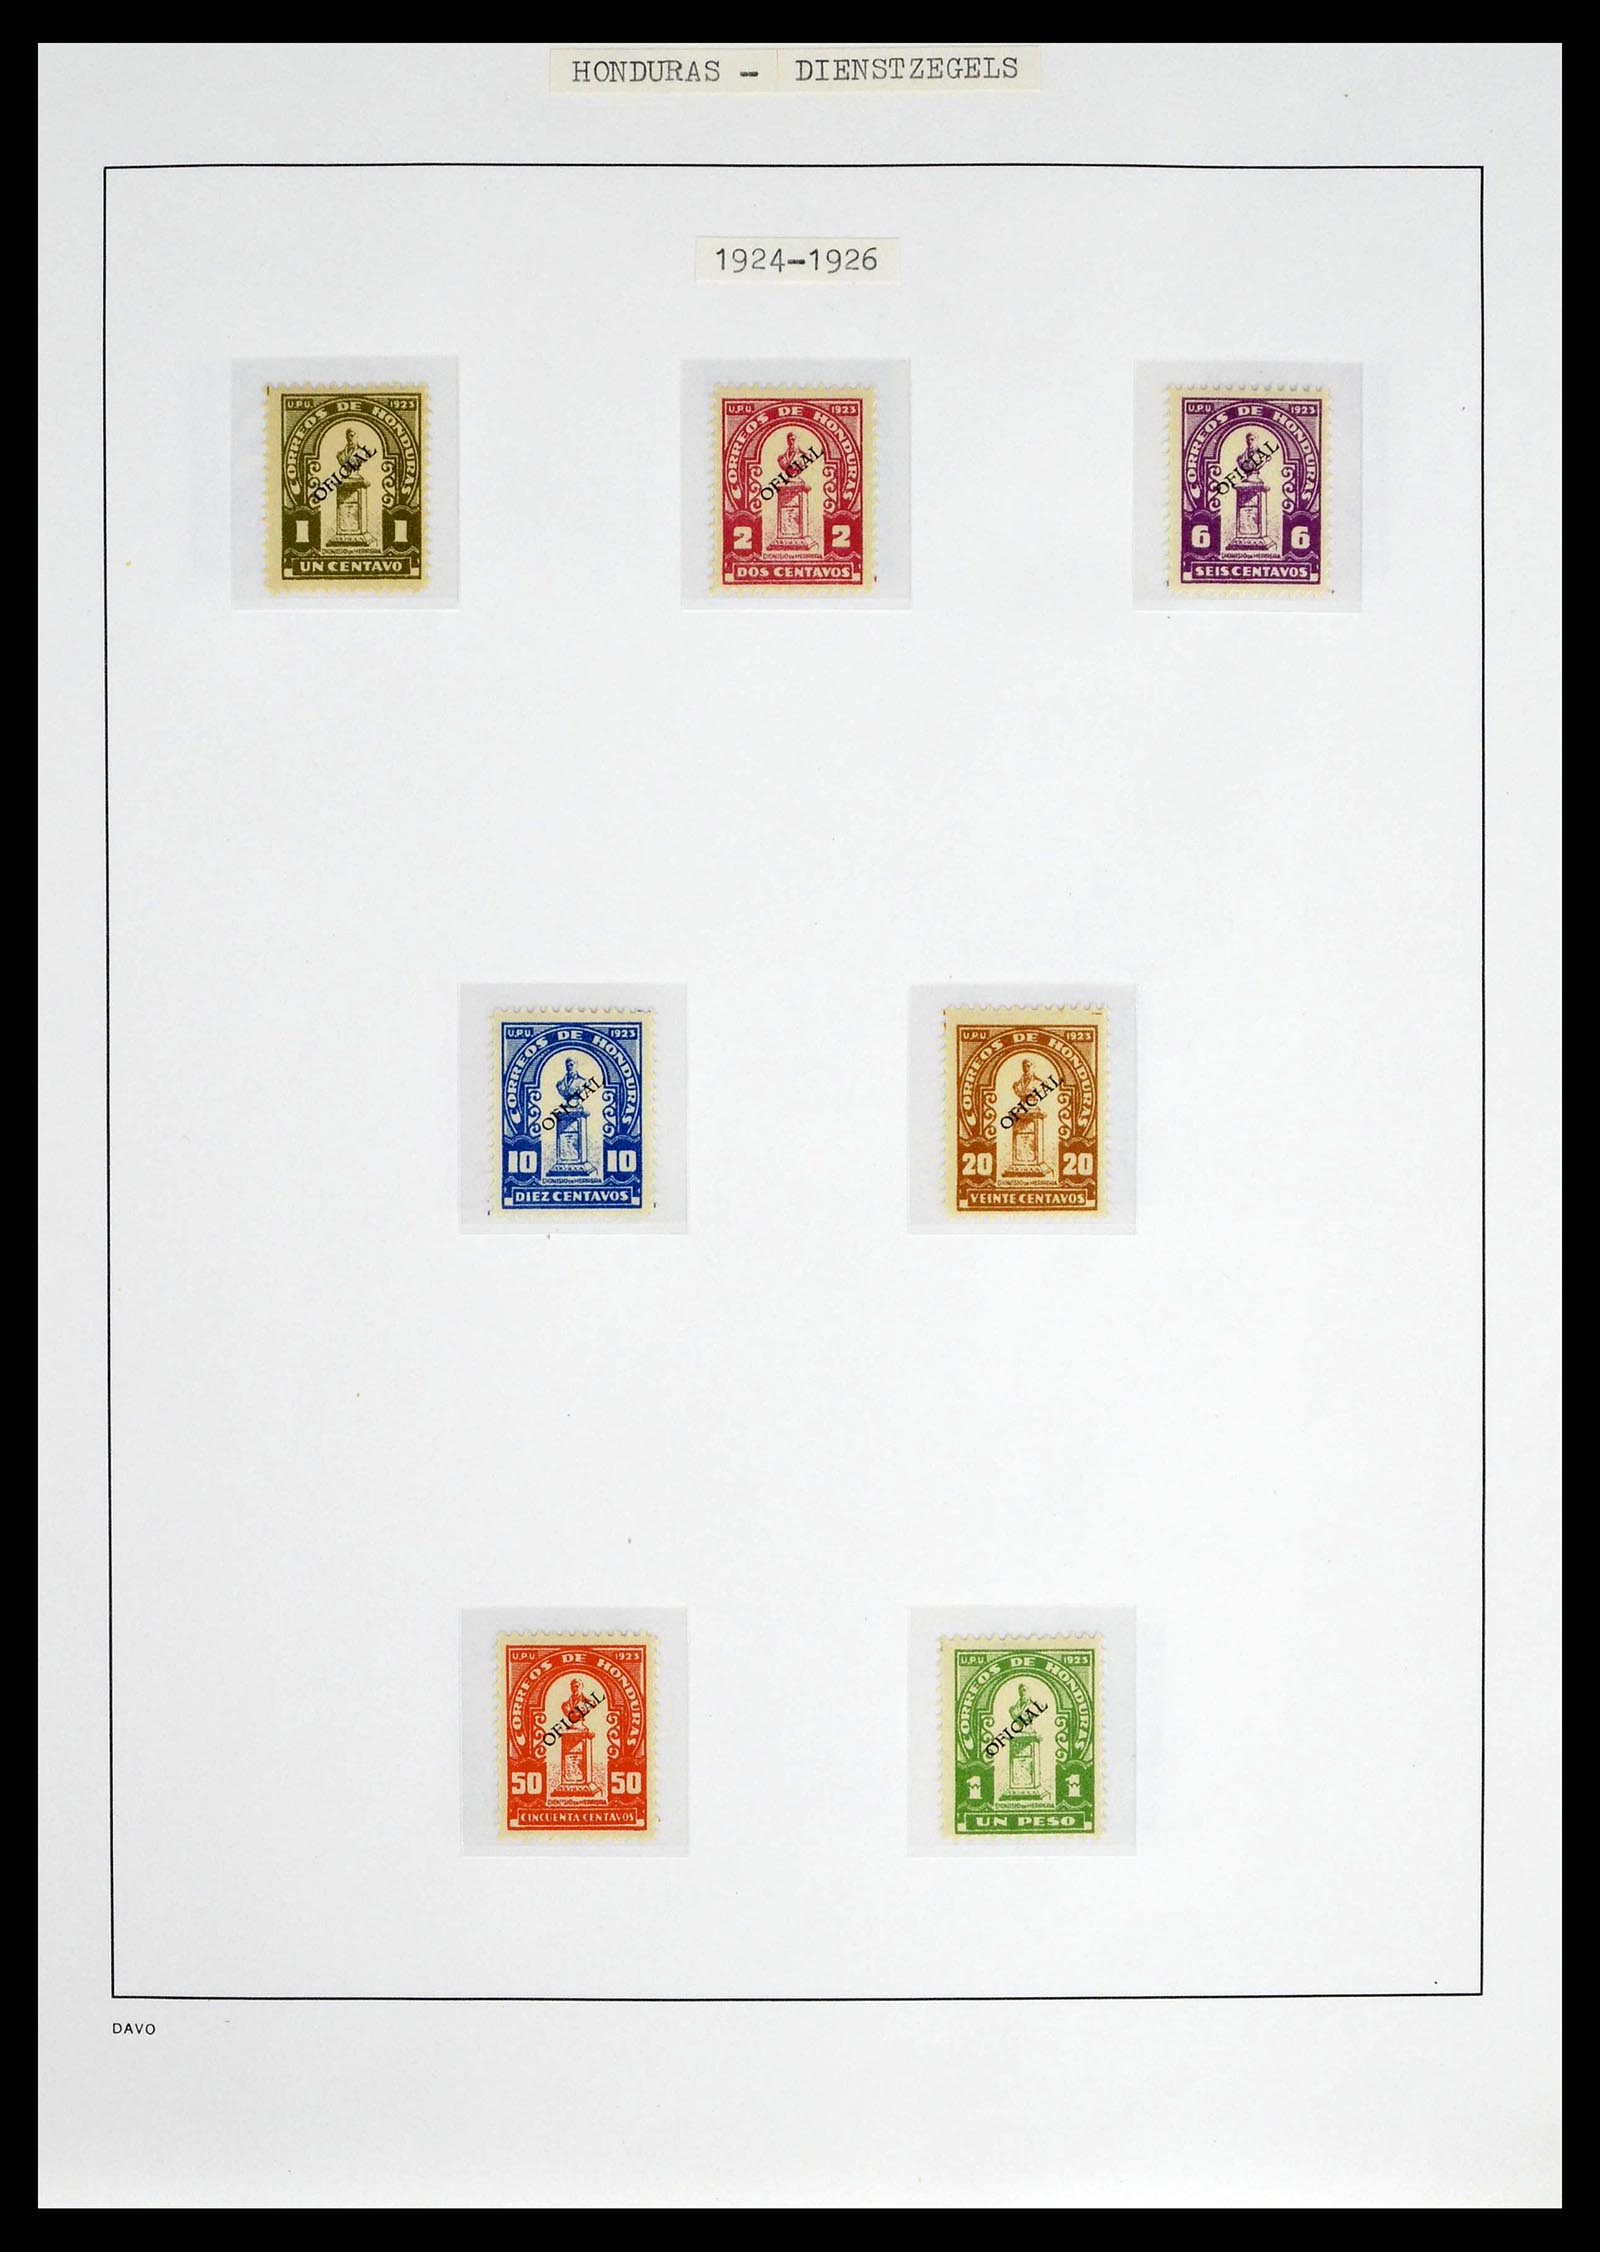 39404 0018 - Postzegelverzameling 39404 Honduras dienstzegels 1890-1974.